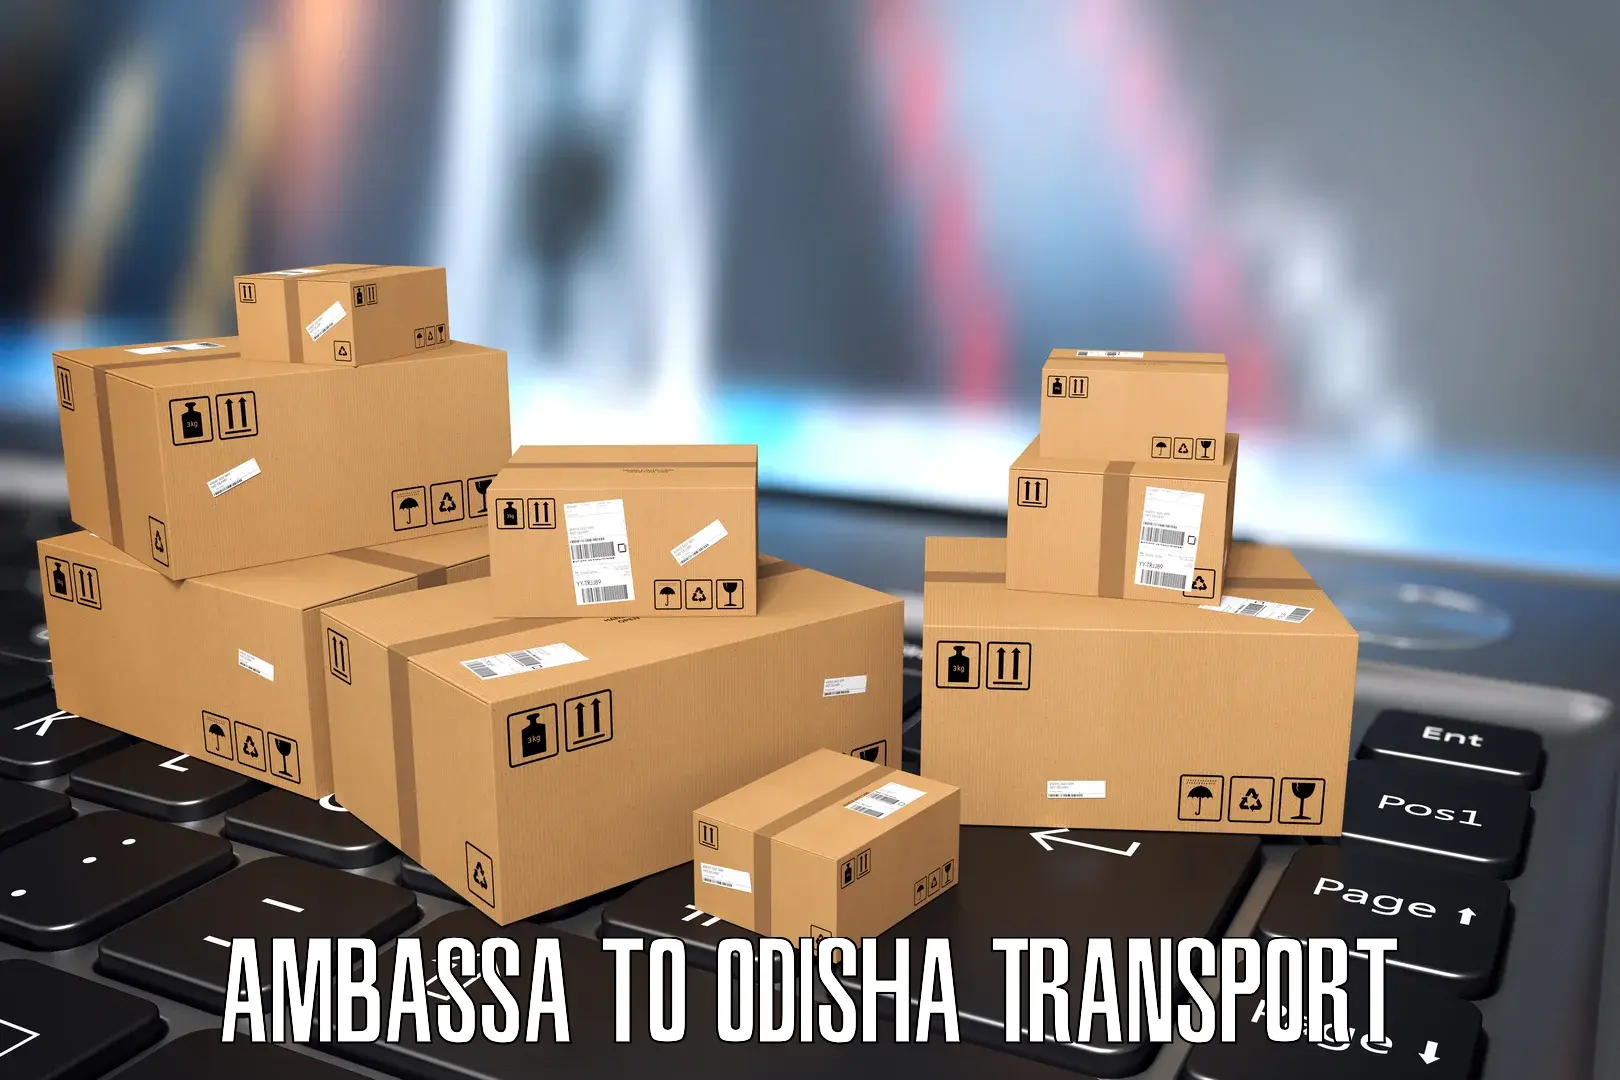 Daily parcel service transport Ambassa to Kuchinda